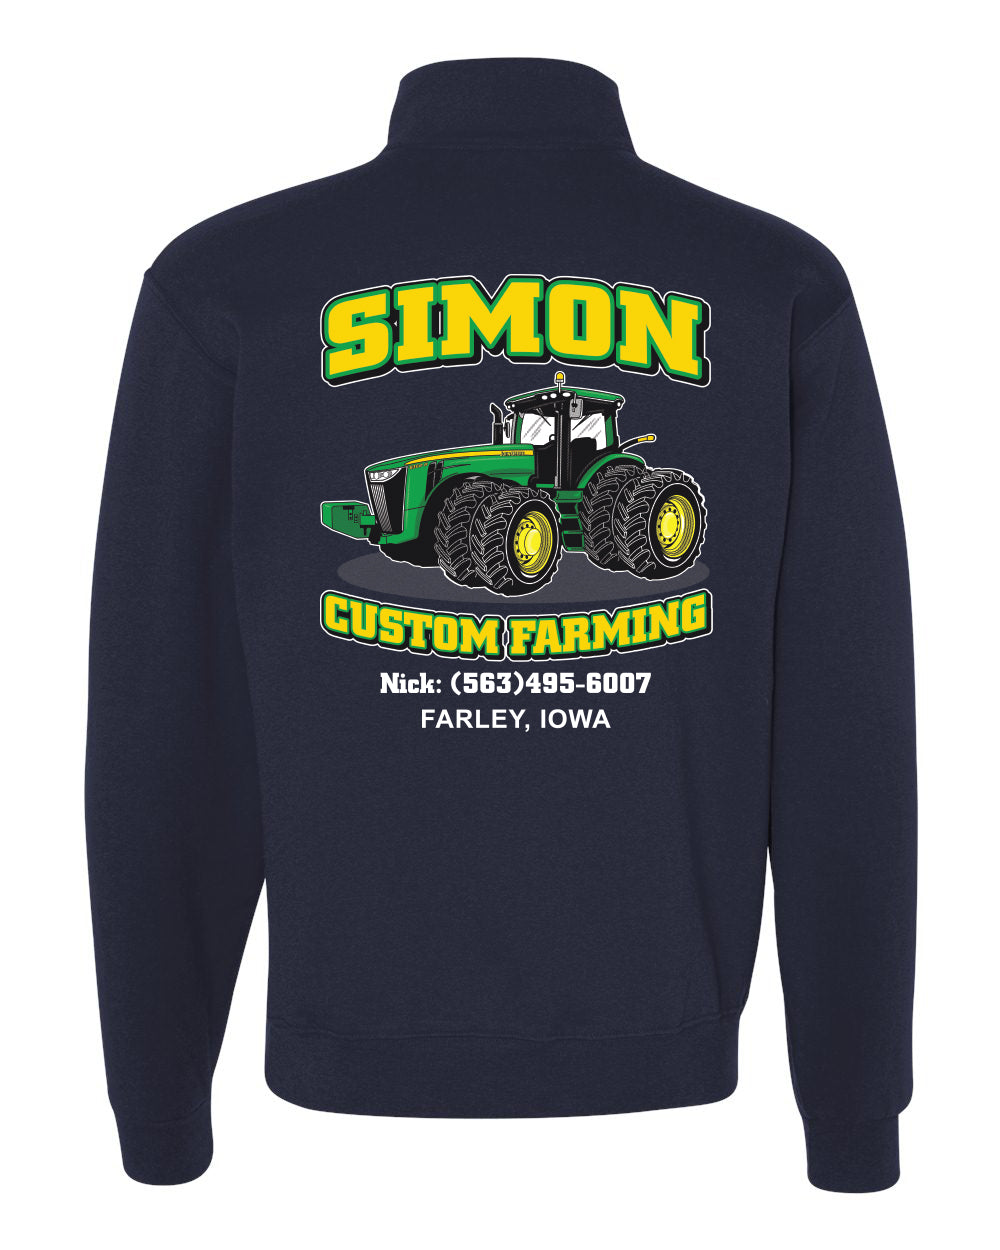 995M- SIMON CUSTOM FARMING Cadet Collar Quarter-Zip Sweatshirt